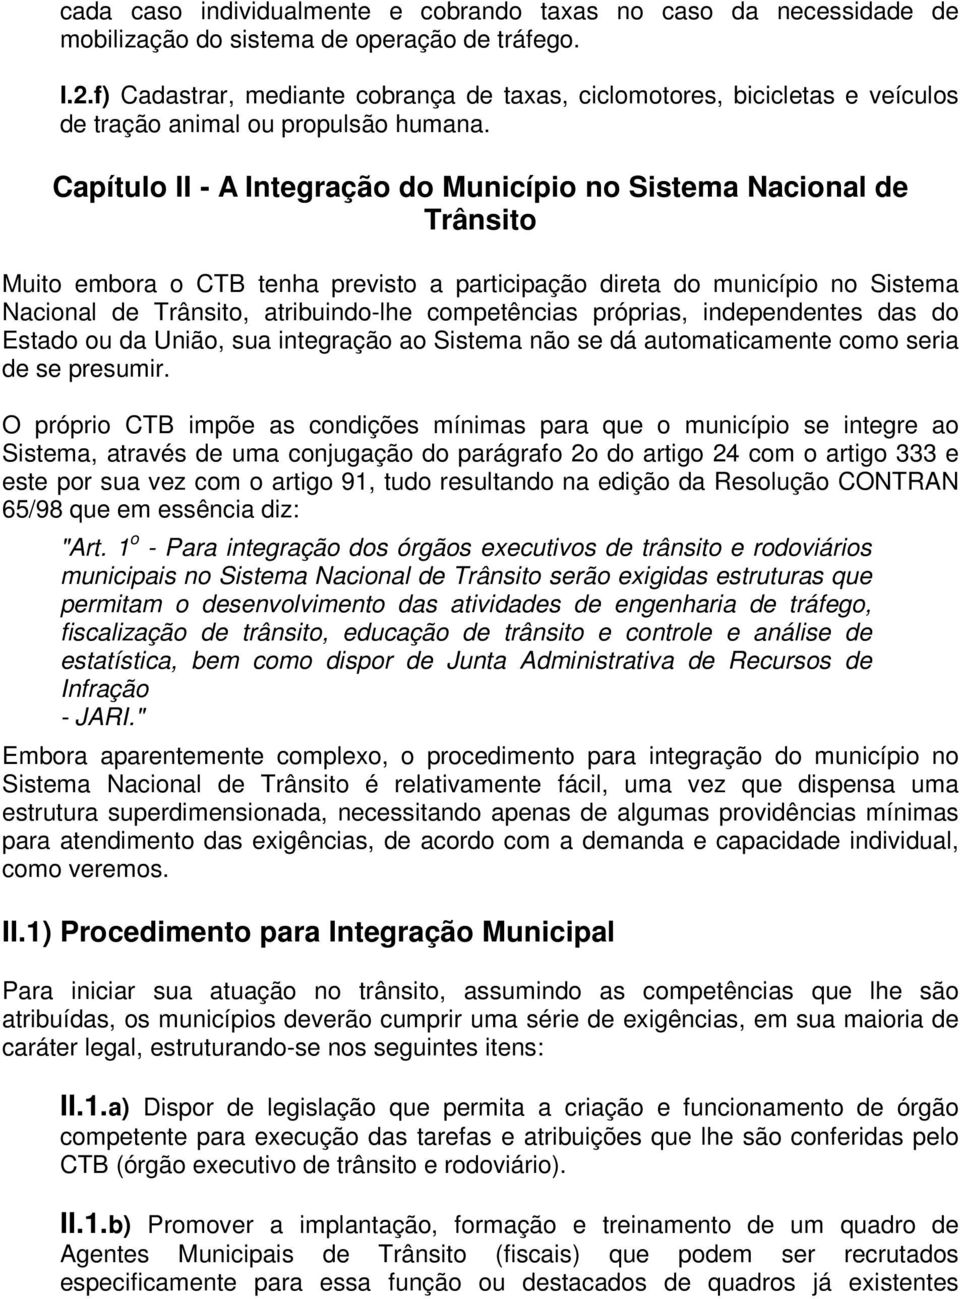 Capítulo II - A Integração do Município no Sistema Nacional de Trânsito Muito embora o CTB tenha previsto a participação direta do município no Sistema Nacional de Trânsito, atribuindo-lhe